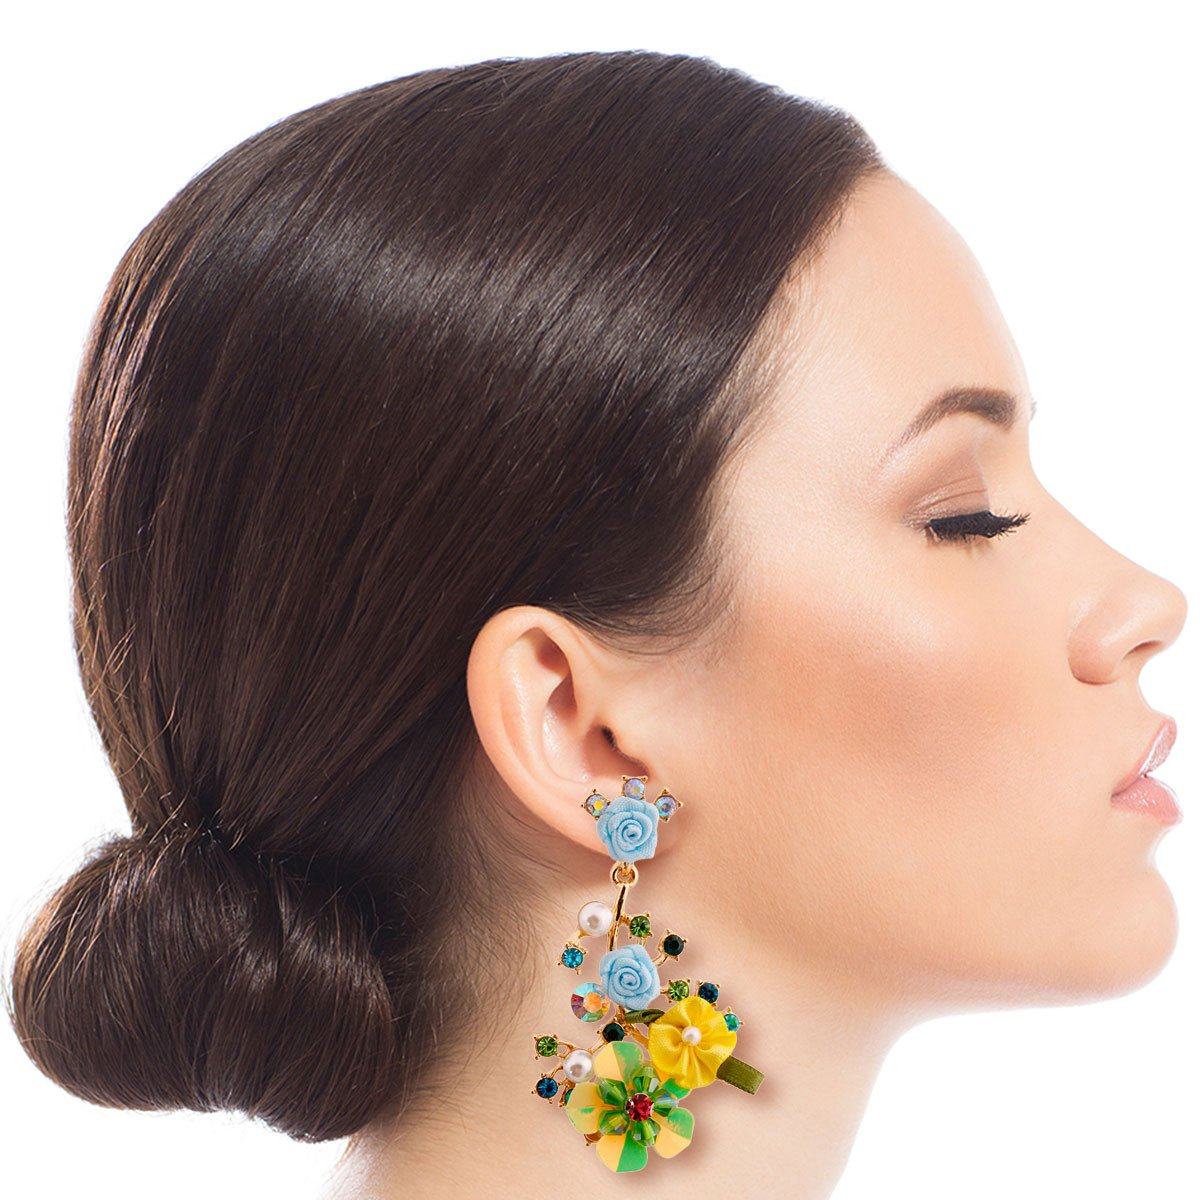 Aqua Flower and Rhinestone Drop Earrings